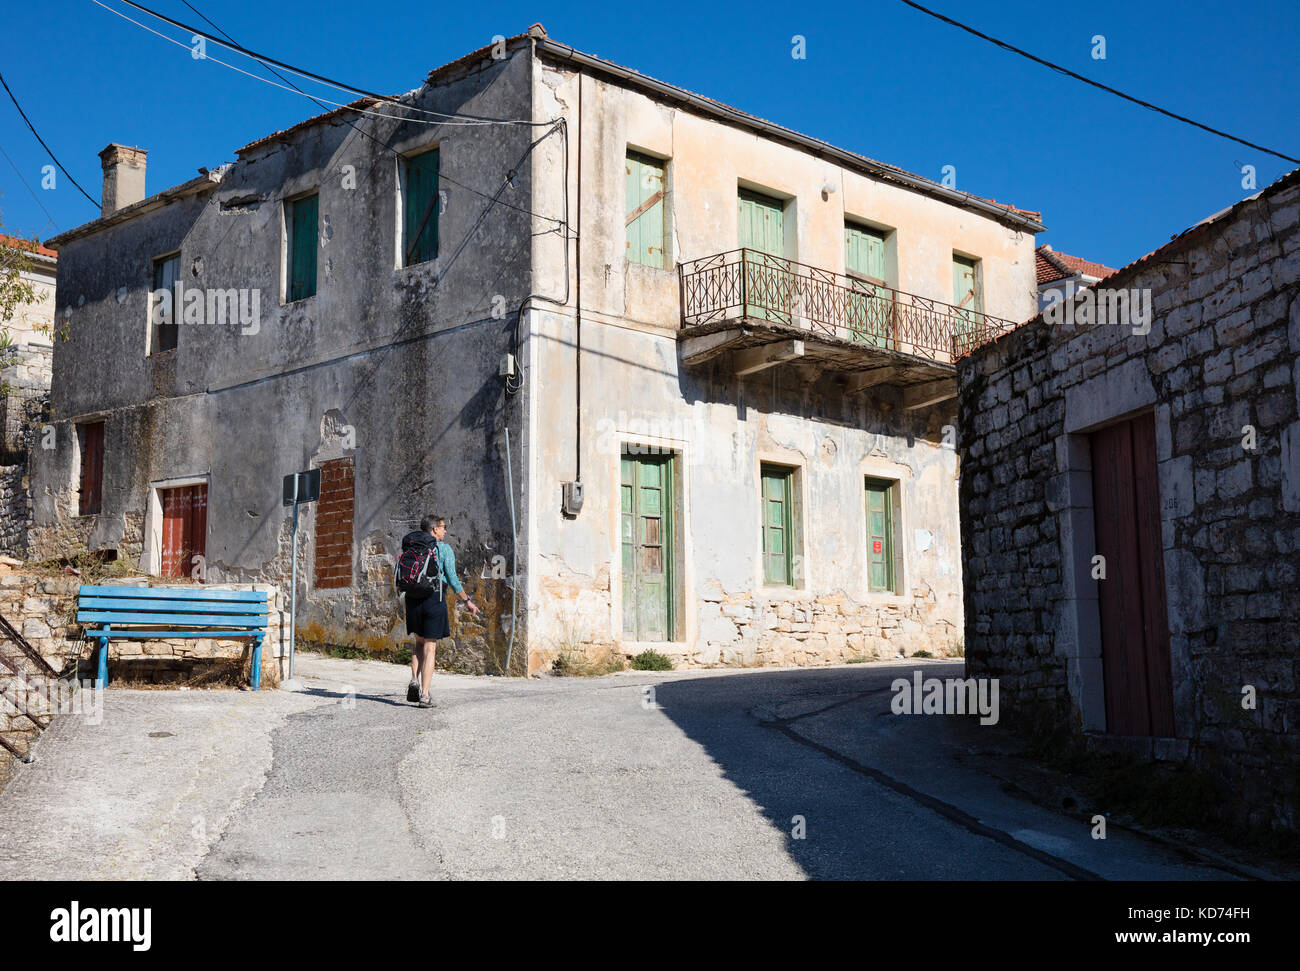 Una femmina di escursionisti a piedi passato case abbandonate lungo una ripida strada nel villaggio di Kioni su Itaca nelle isole greche ioniche Foto Stock